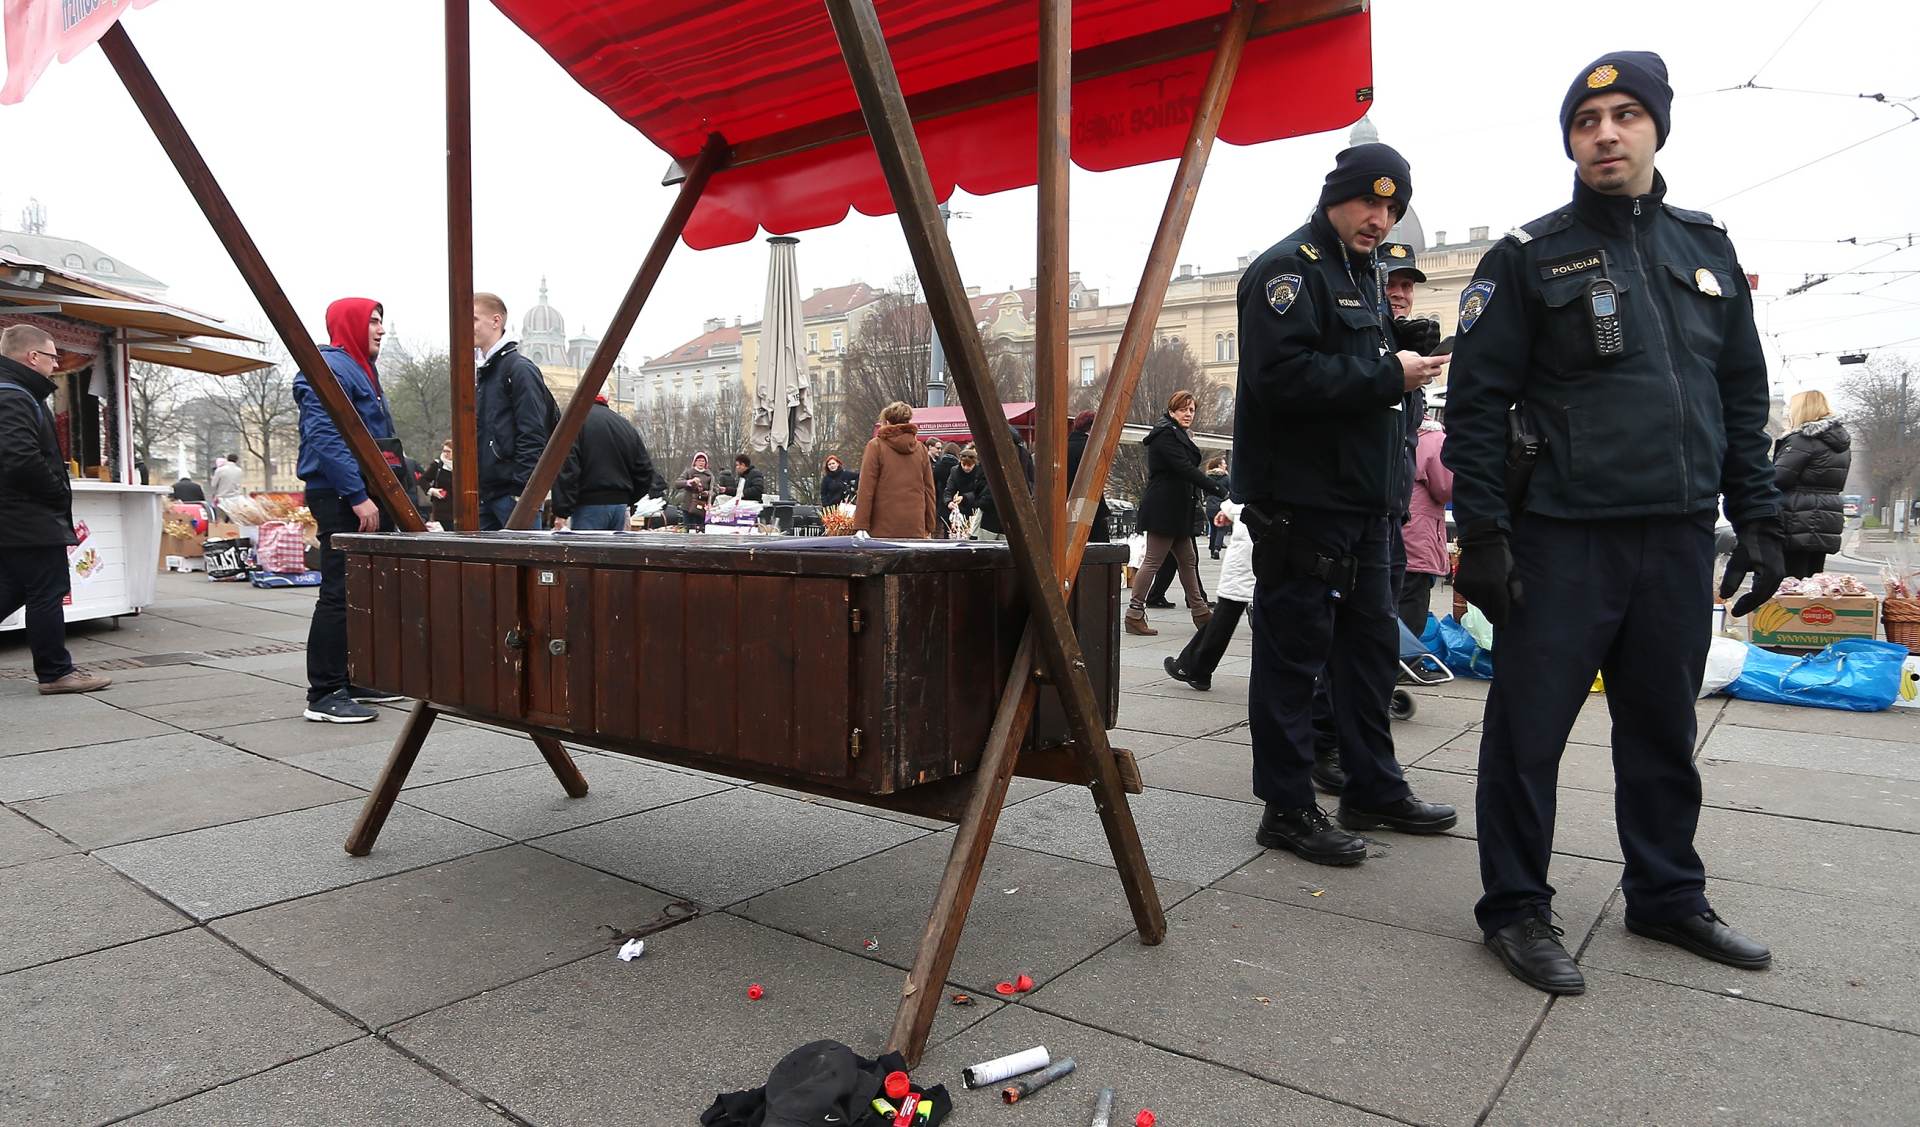 05.12.2015., Zagreb - Zbog navijaca i paljenja baklje na Glavnom kolodvoru intervenirala je policija.
Photo: Davor Puklavec/PIXSELL